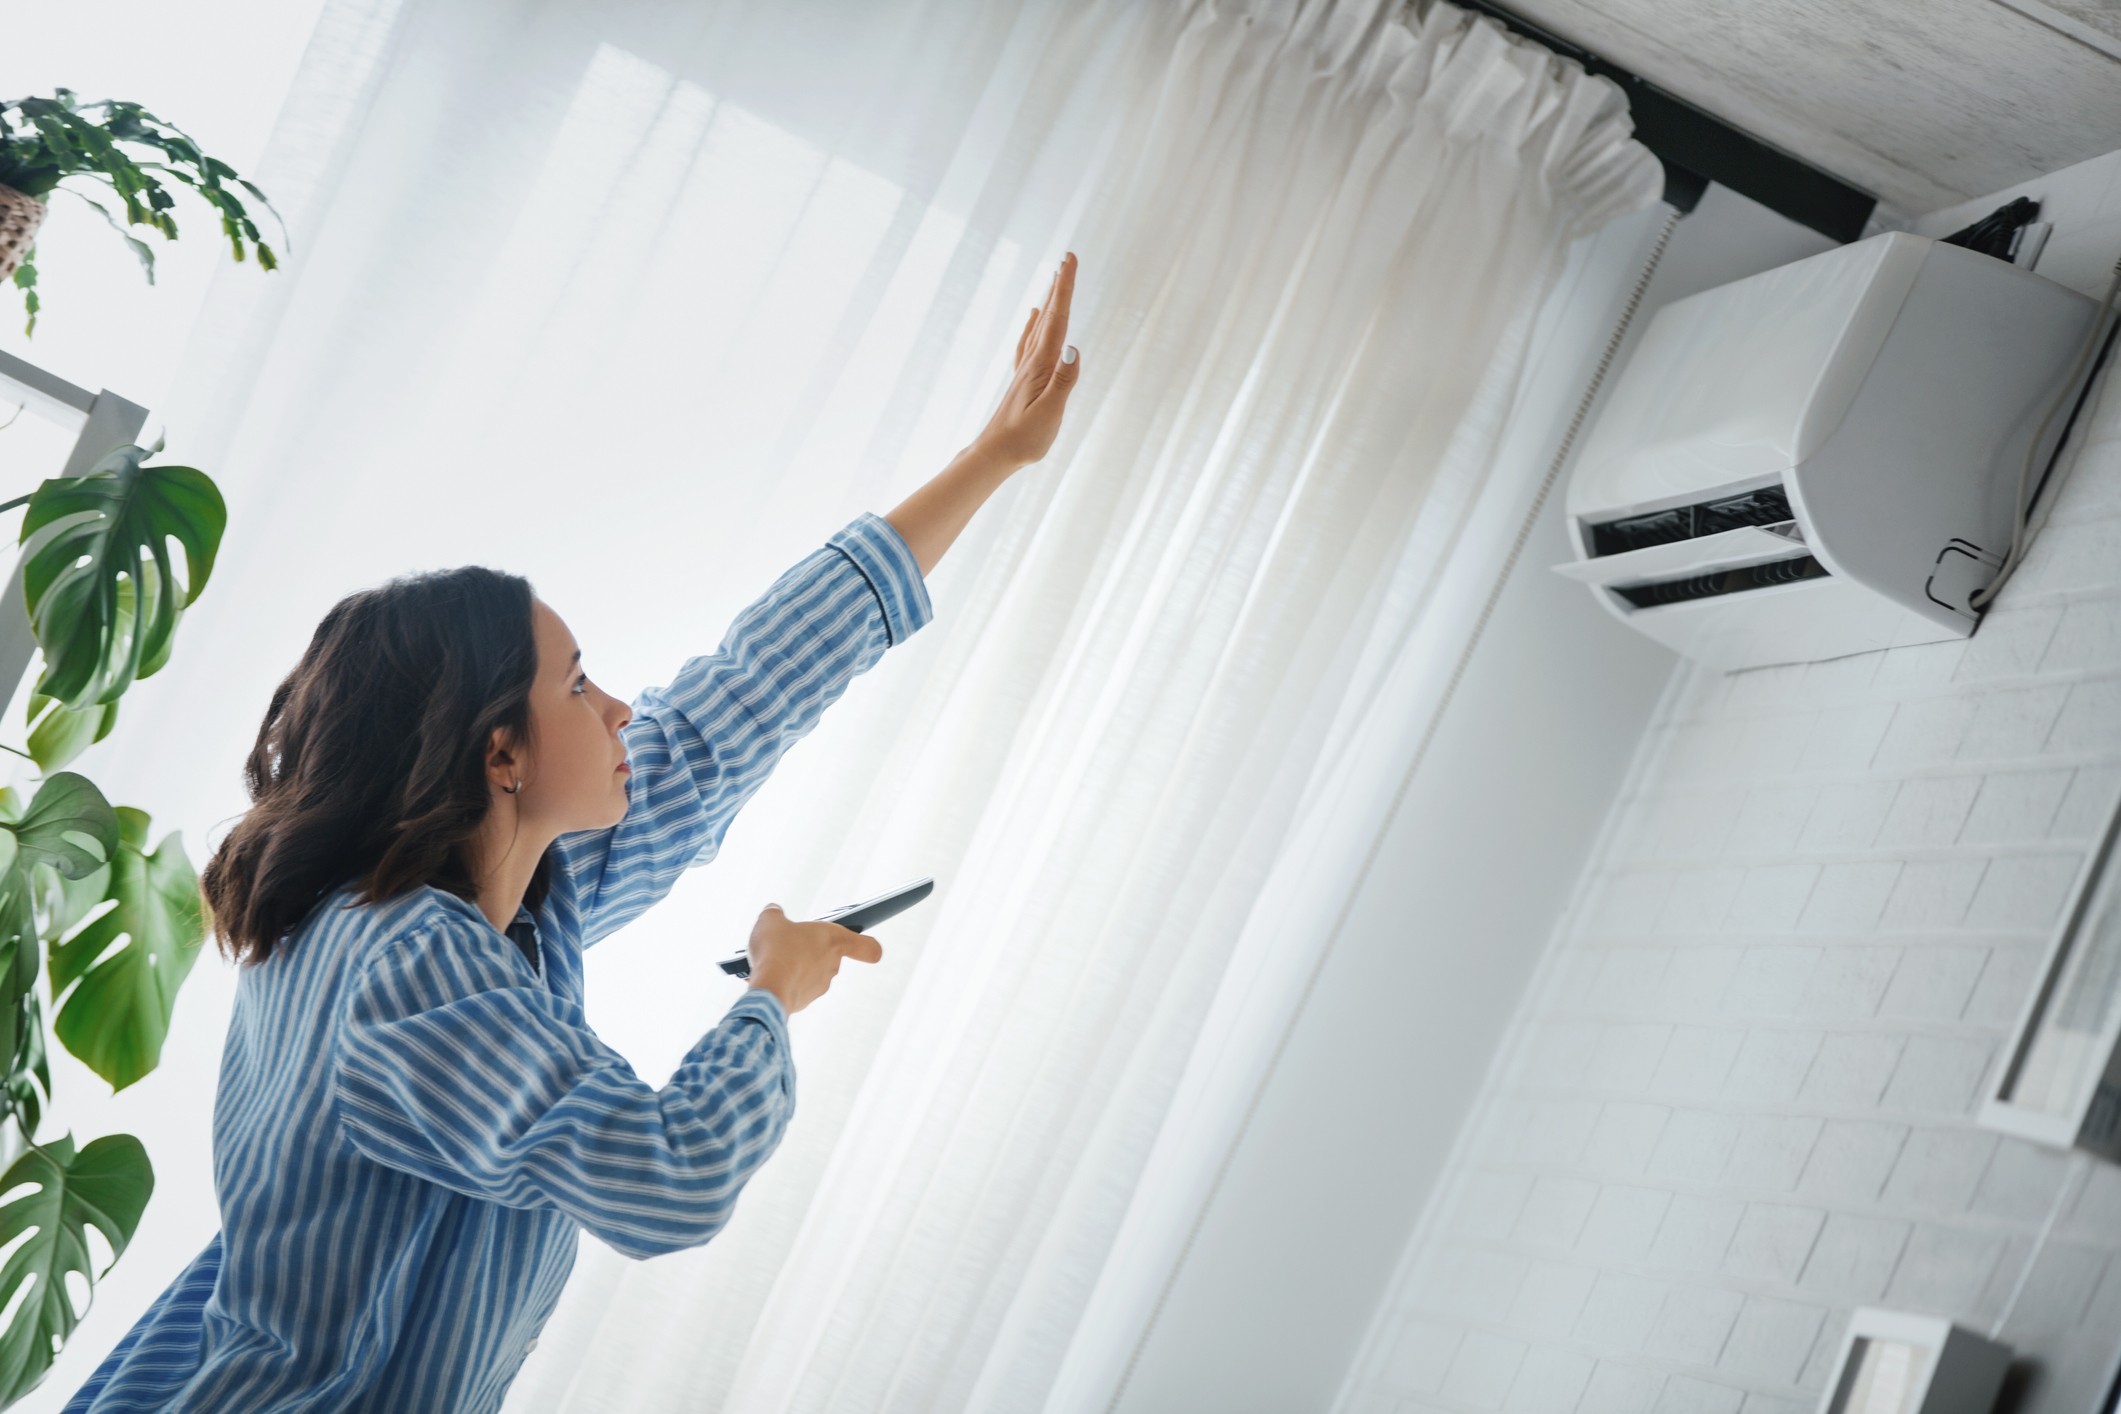 Esse sistema de climatização possui ótimas vantagens para quem tem uma casa ampla. (Foto: Getty Images)